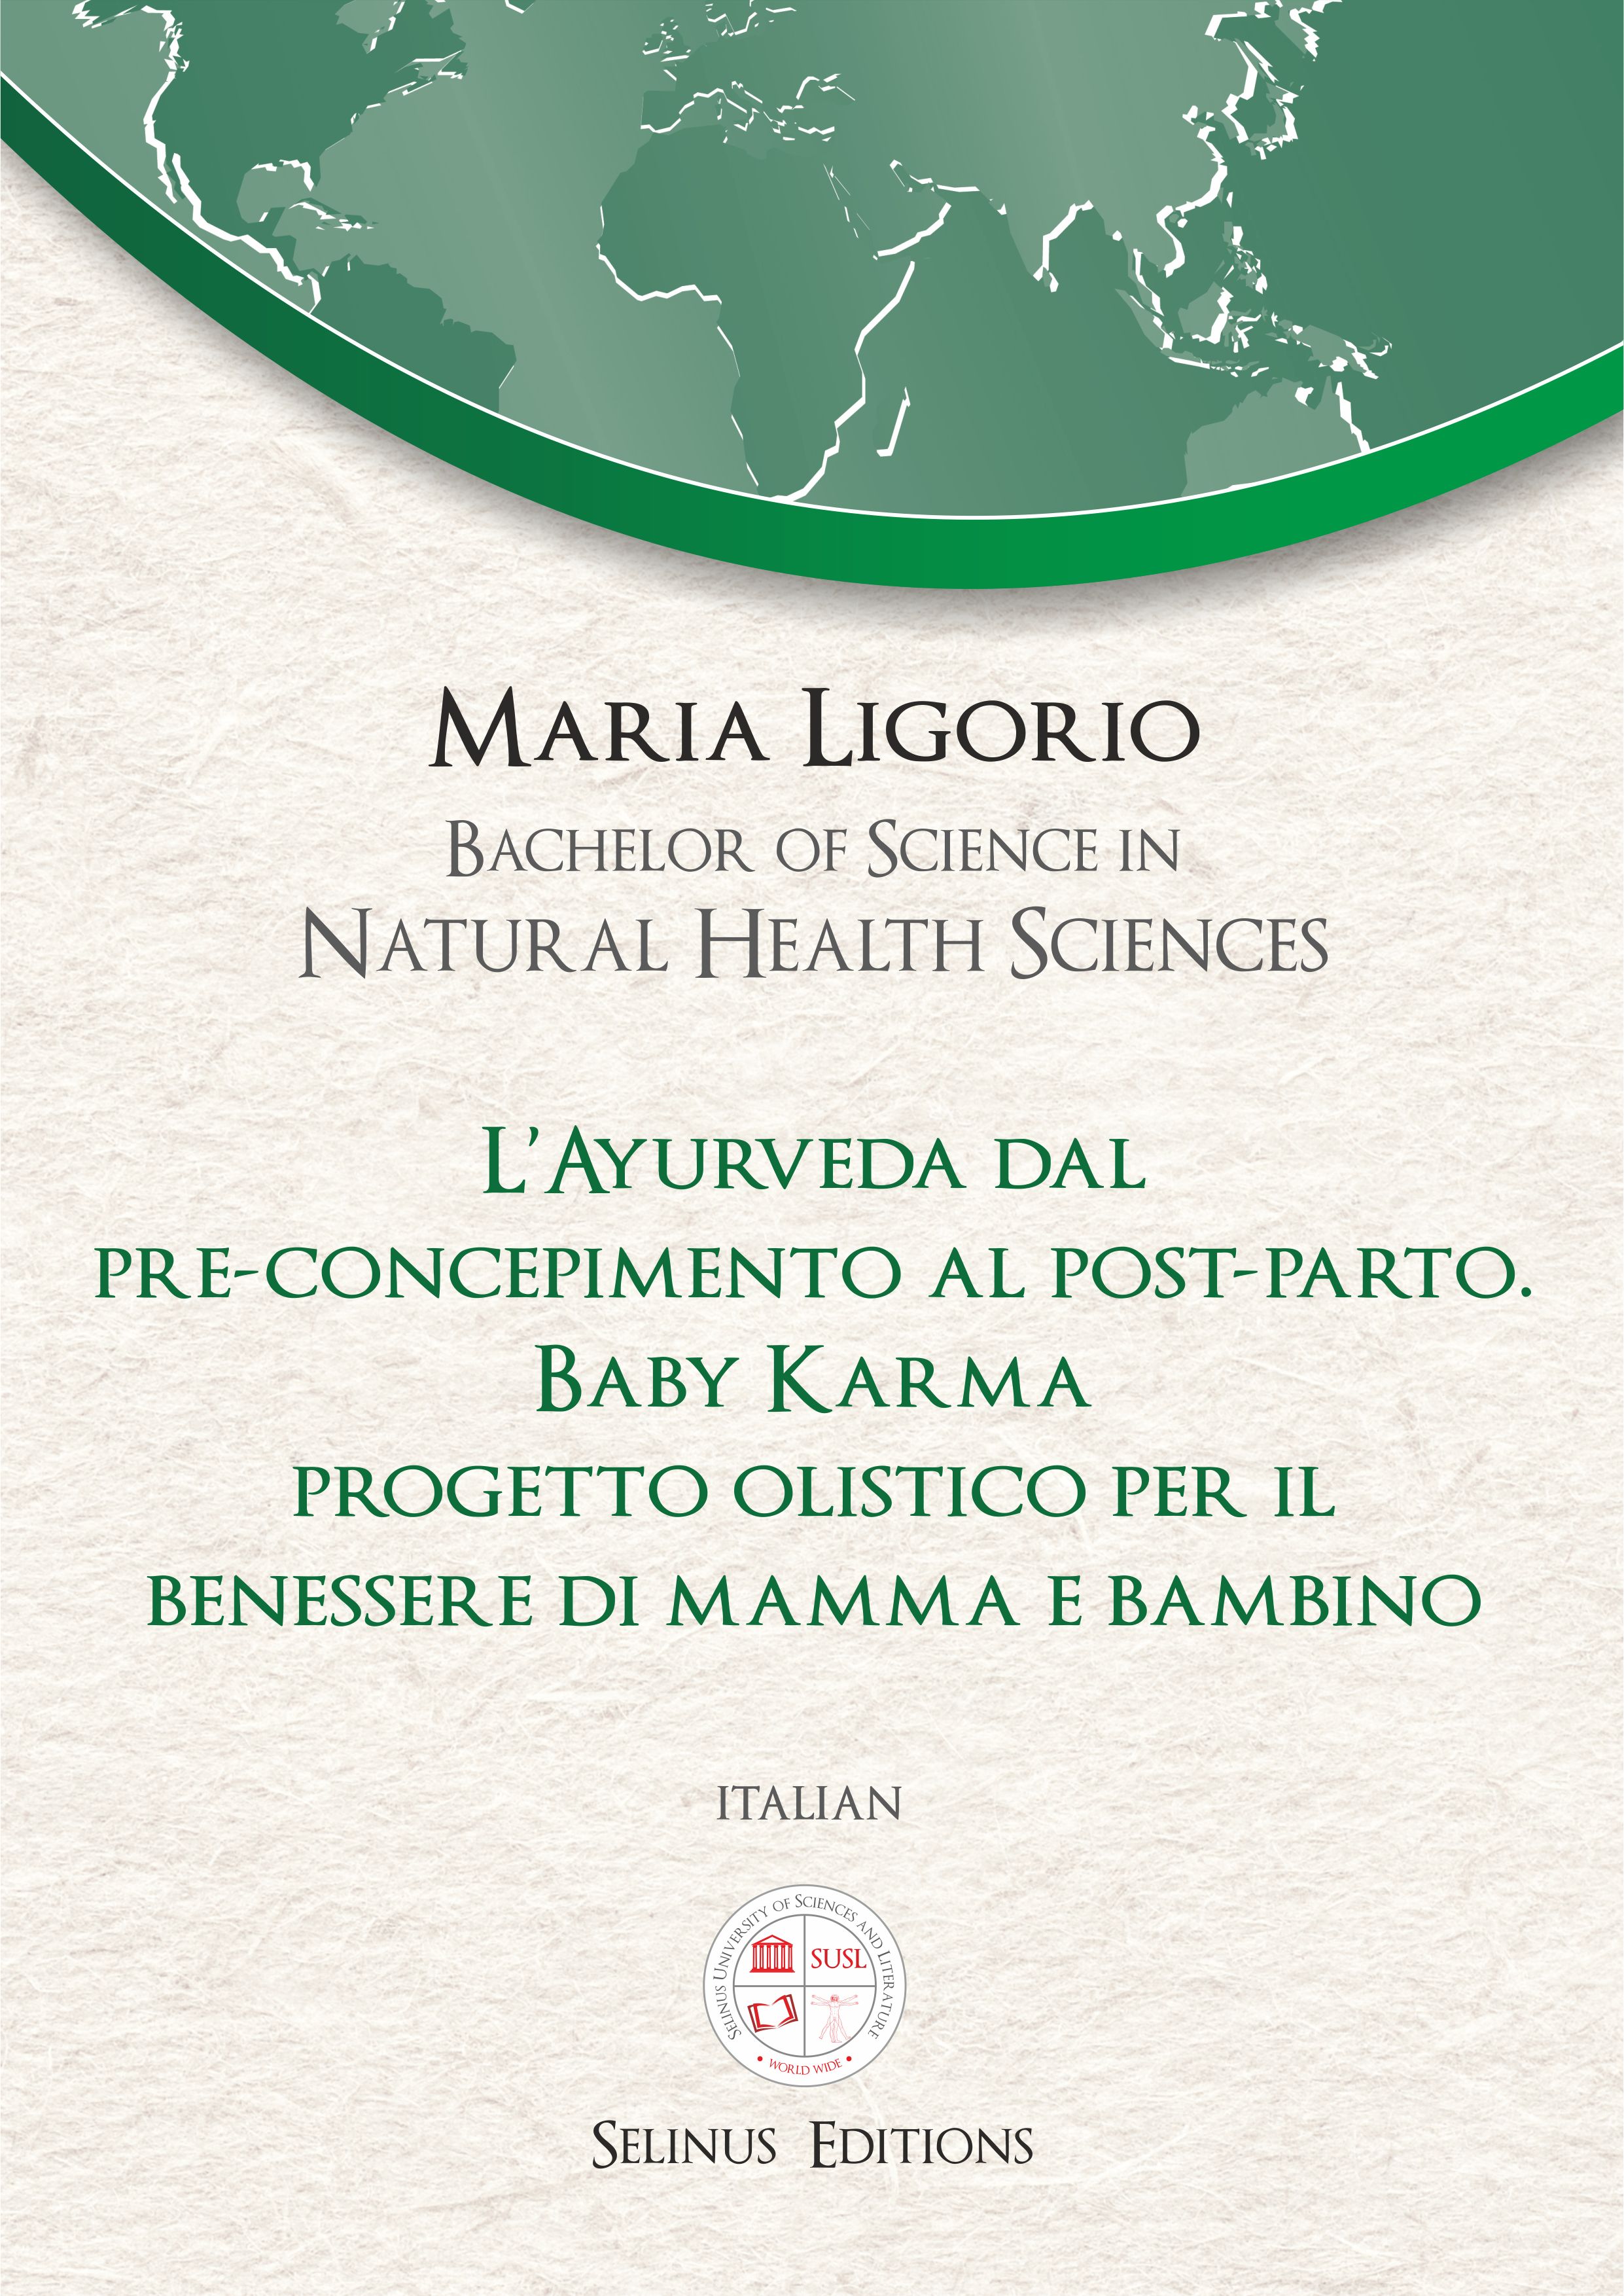 Thesis Maria Ligorio